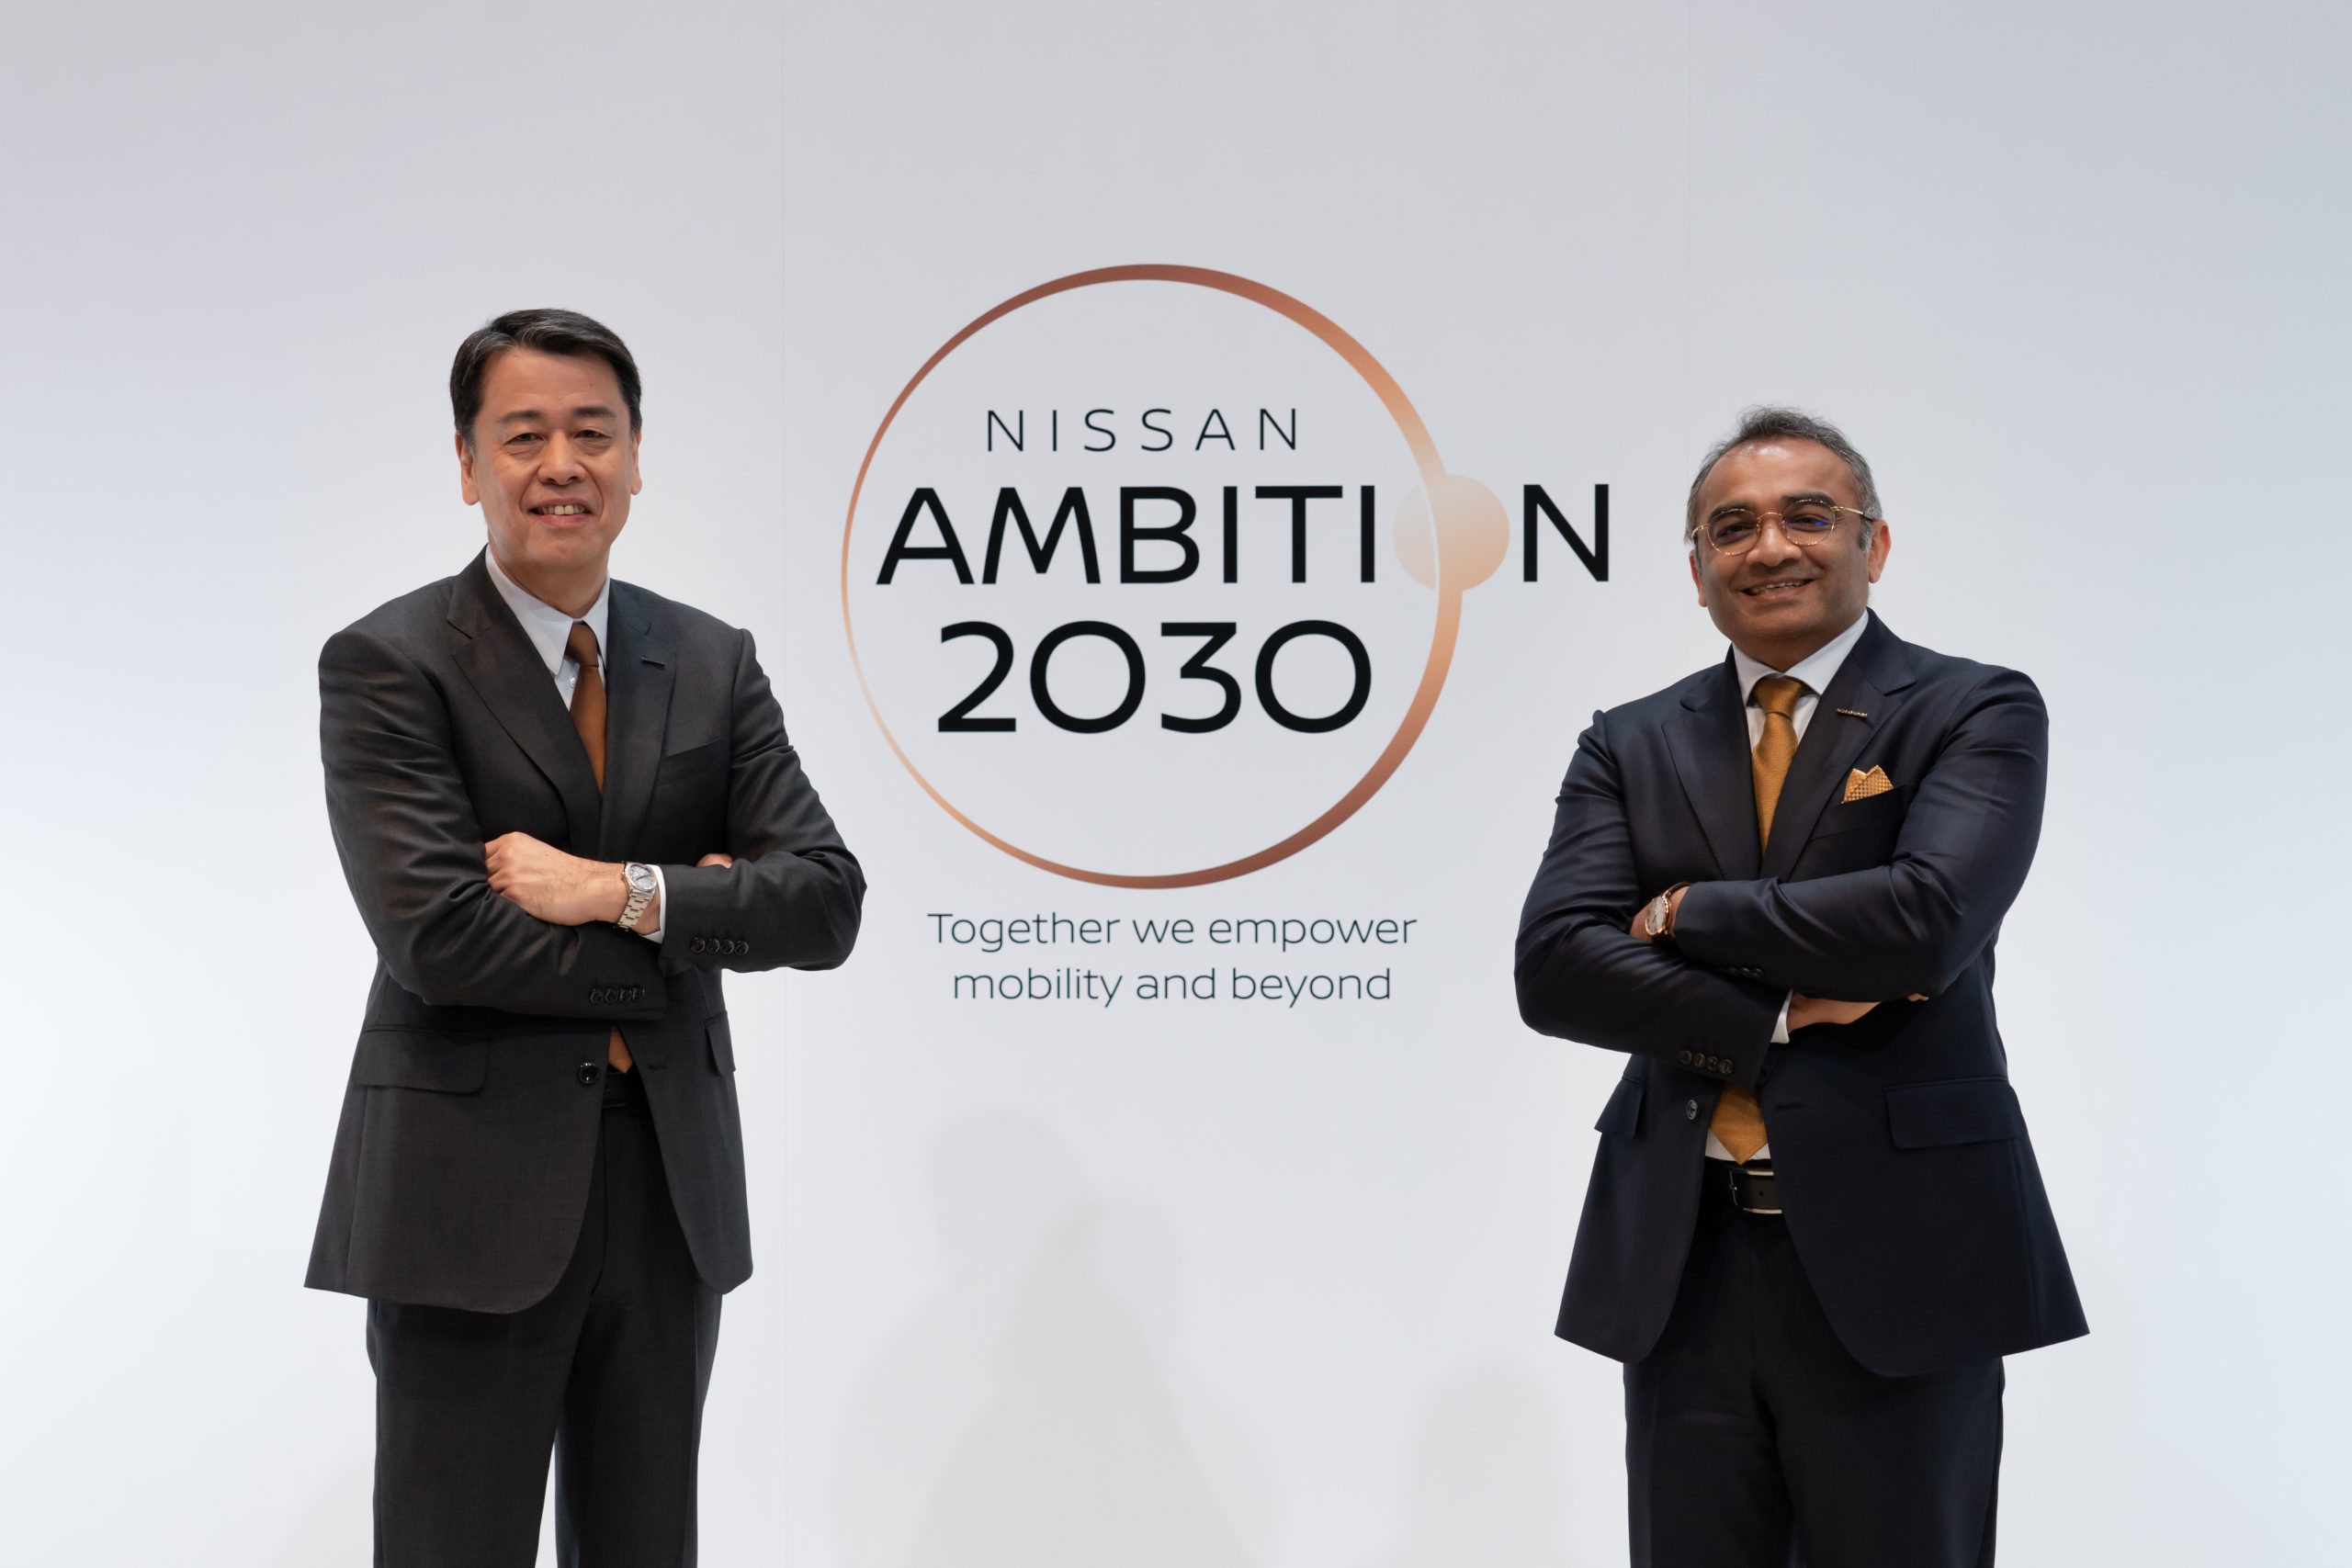 日産、長期ビジョン「Nissan Ambition 2030」発表　「共に切り拓く モビリティとその先へ」をスローガンに持続可能な企業へ